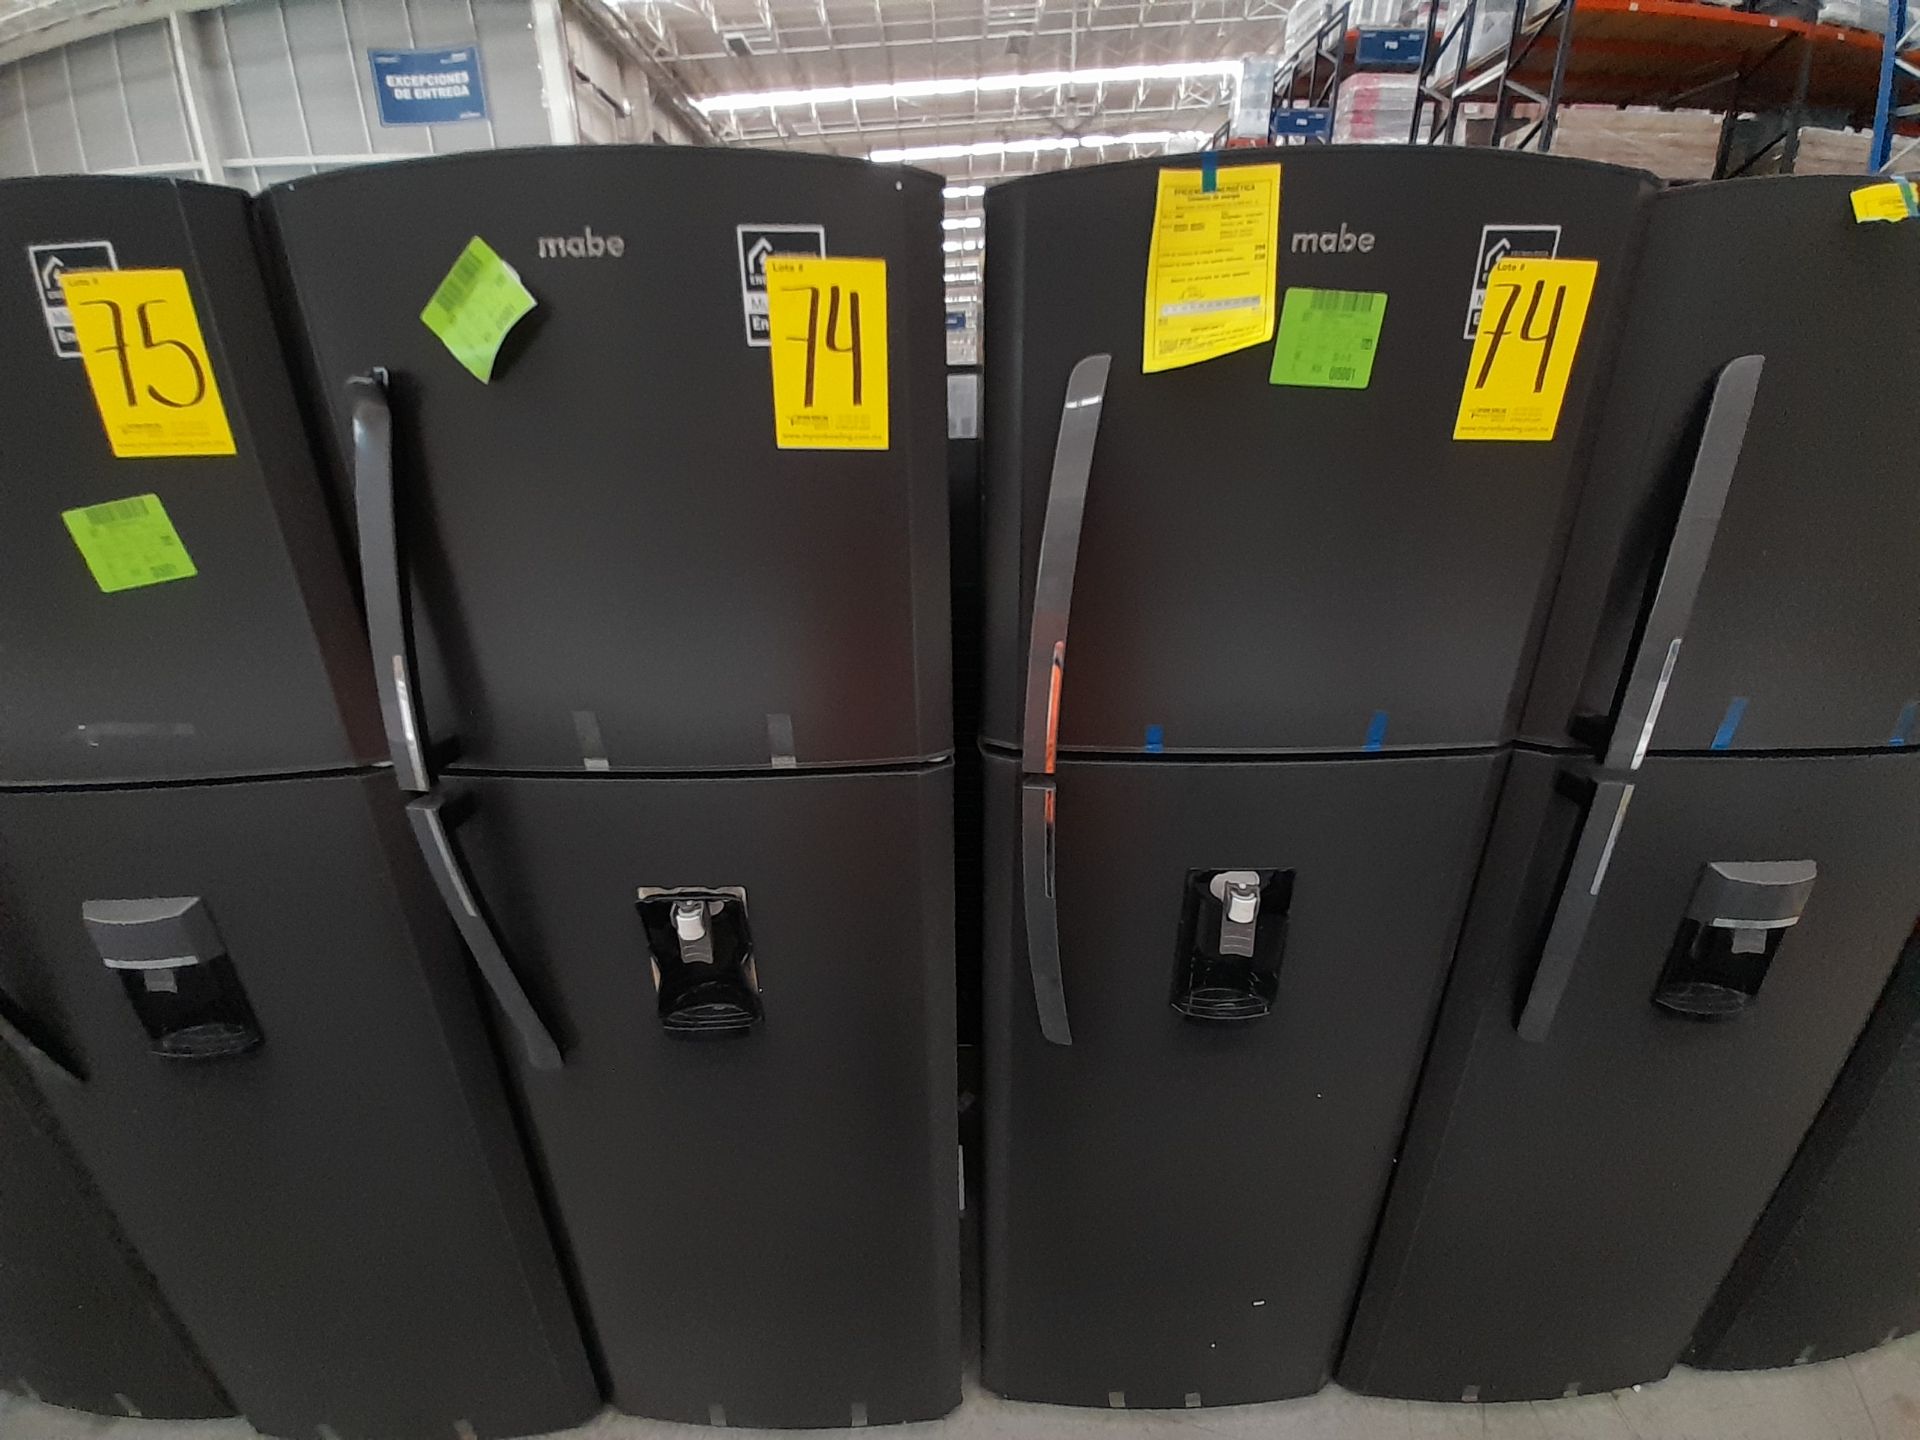 Lote de 2 Refrigeradores contiene: 1 Refrigerador con dispensador de agua Marca MABE, Modelo RMA300